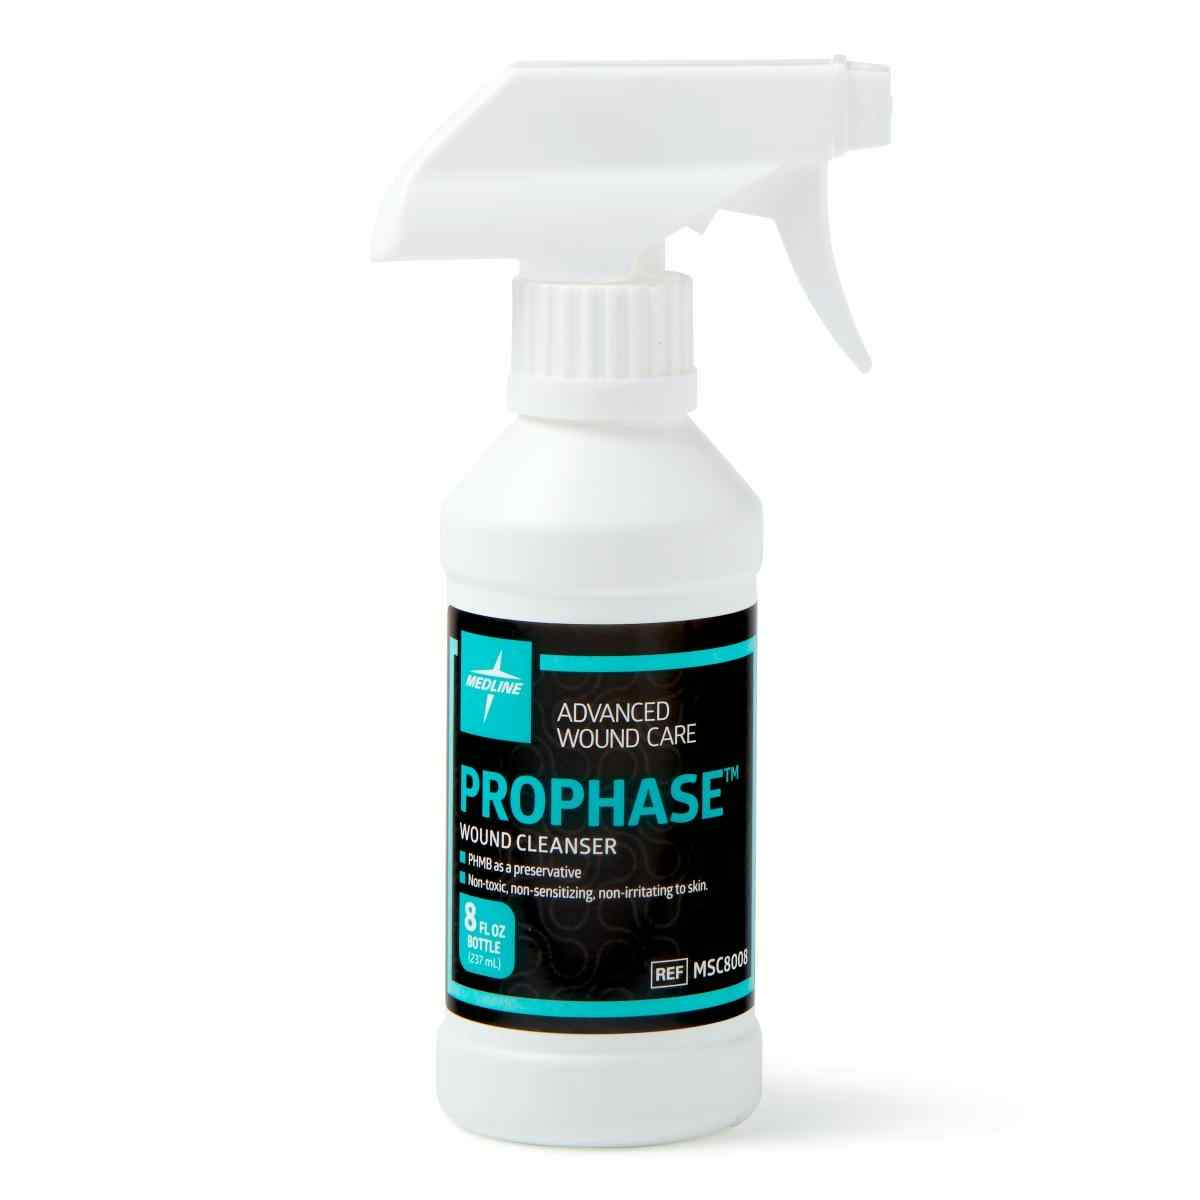 Medline Prophase Wound Cleanser, MSC8008H, 8 oz. Spray - 1 Each